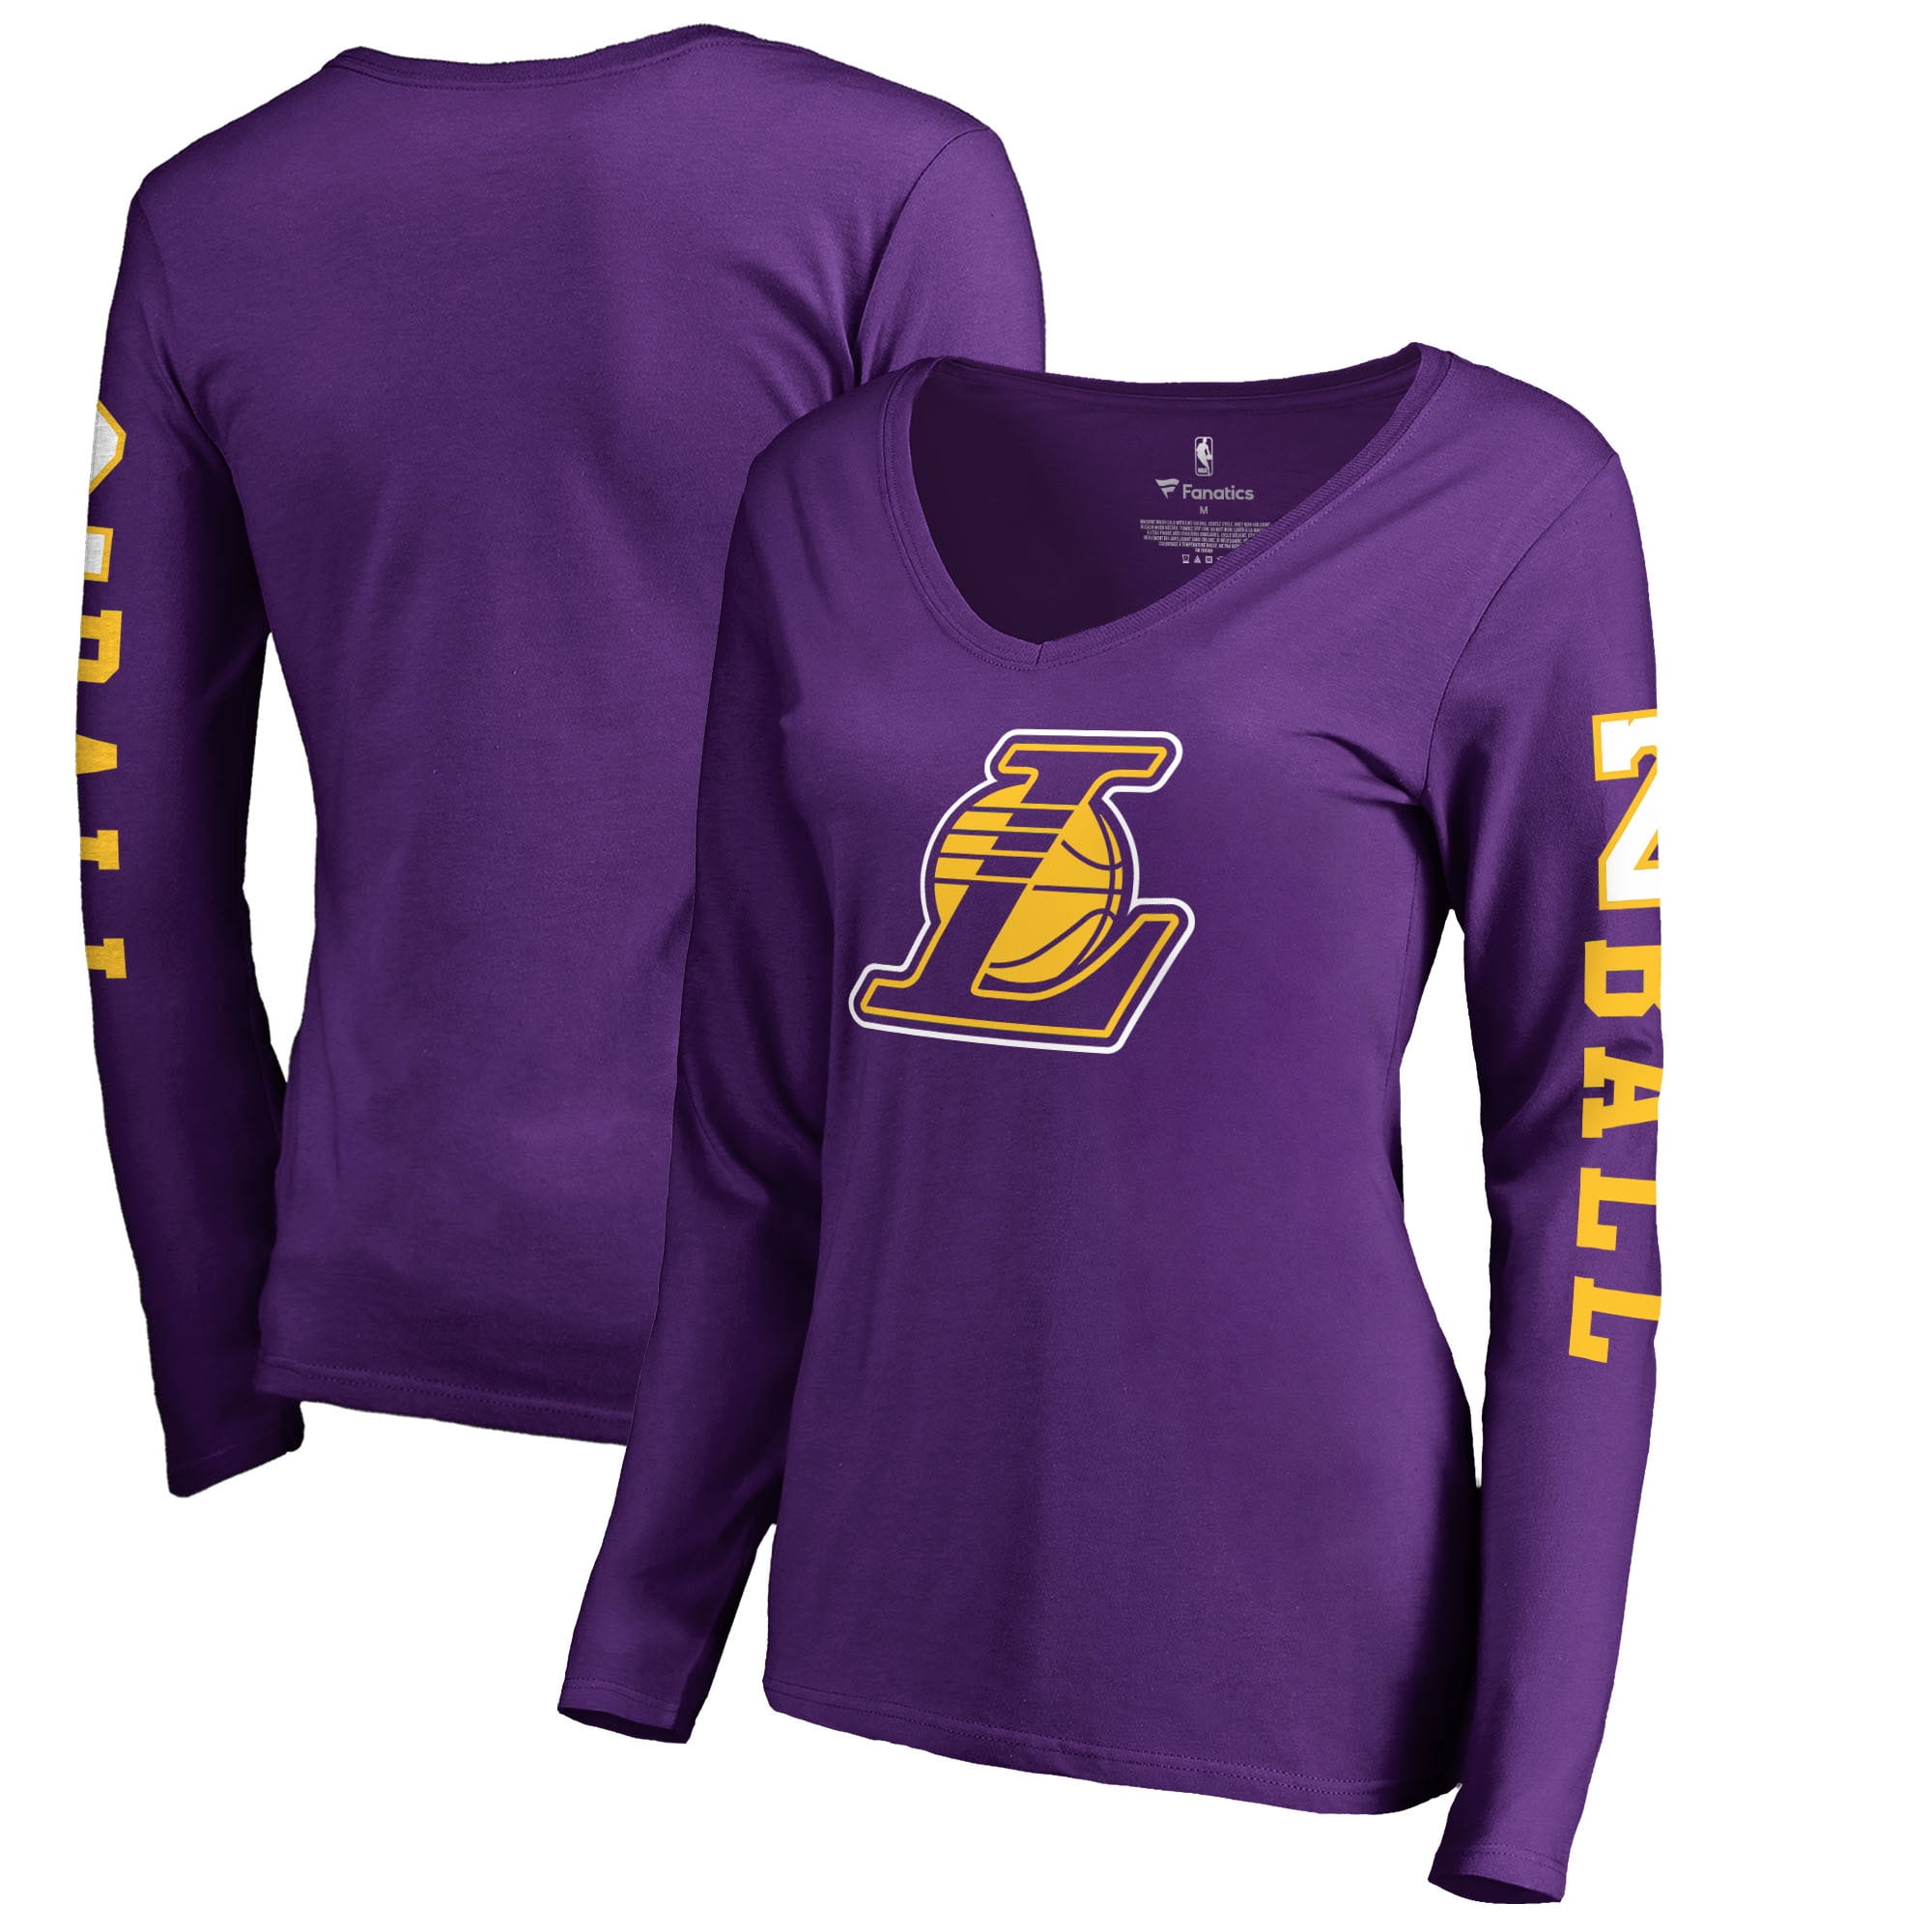 lonzo ball jersey purple